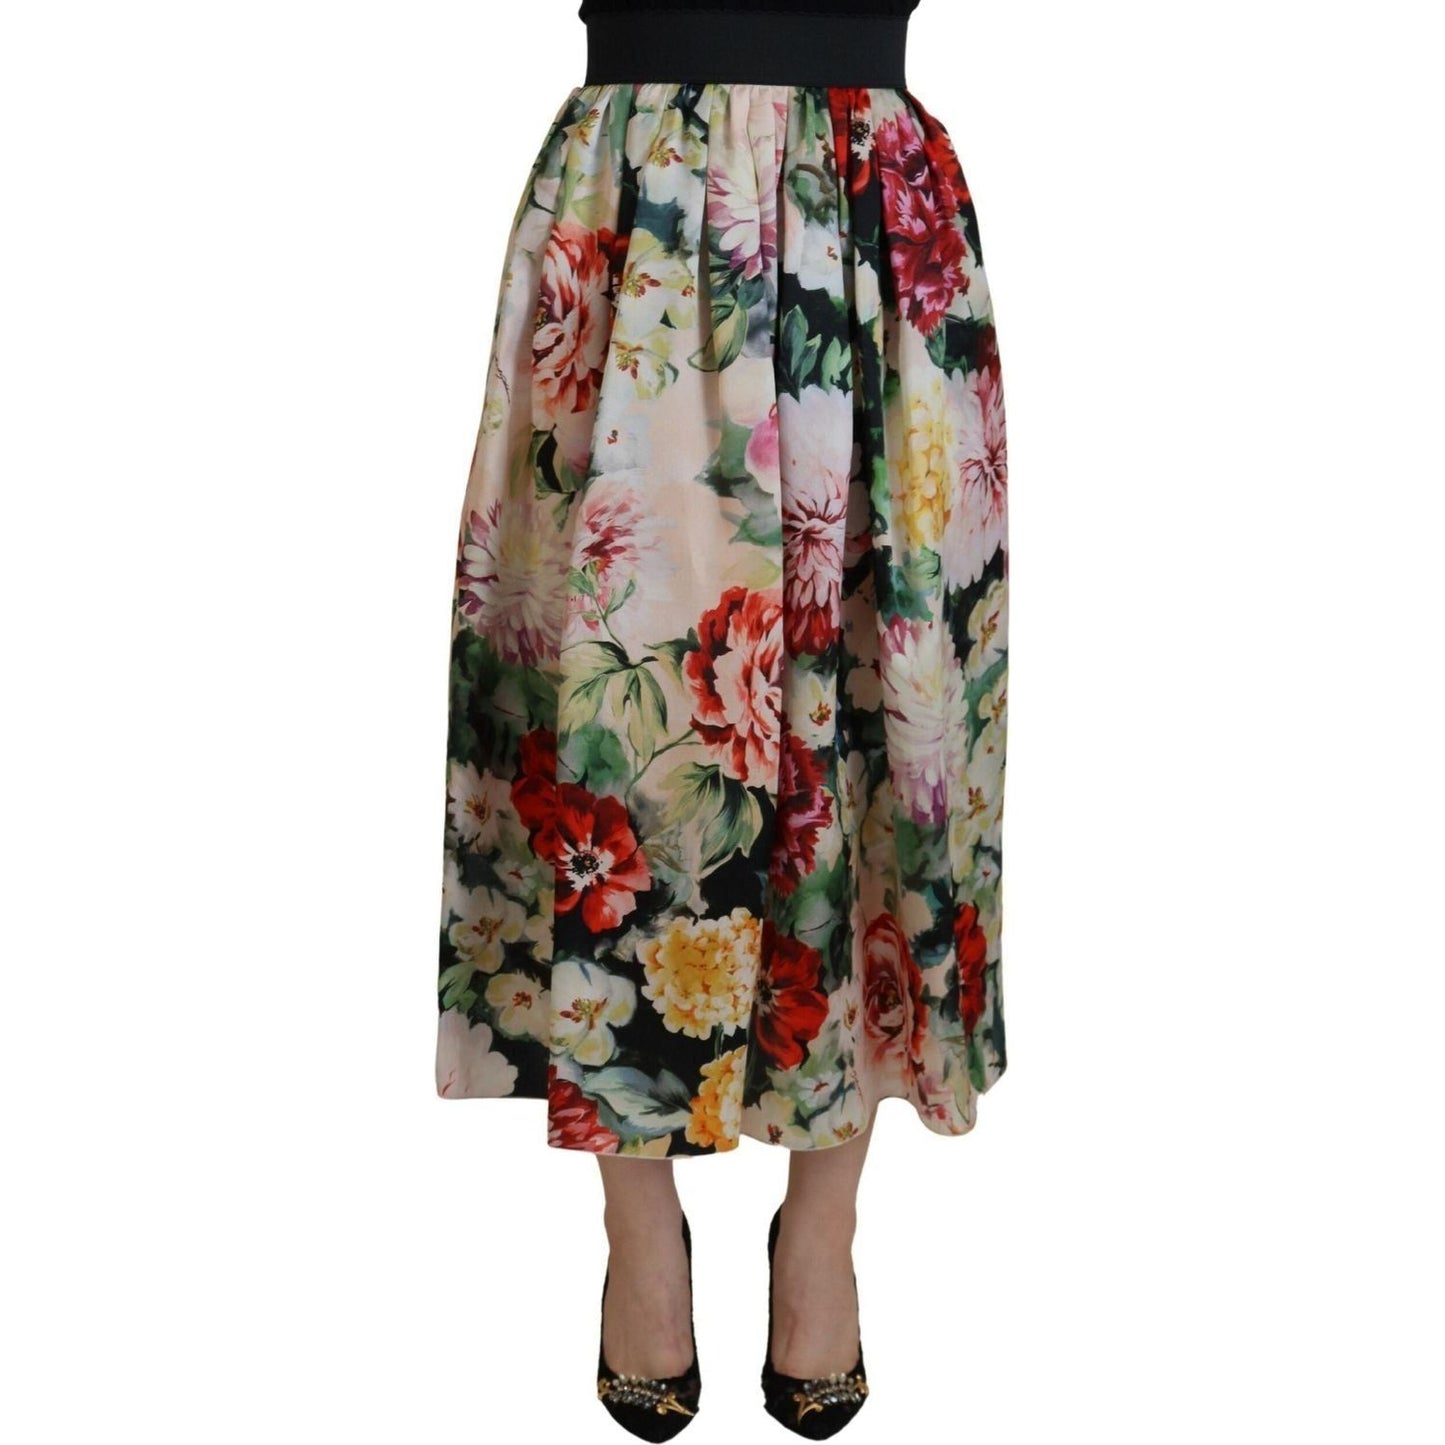 Dolce & Gabbana Exquisite High Waist Floral Silk Skirt multicolor-floral-silk-high-waist-aline-skirt